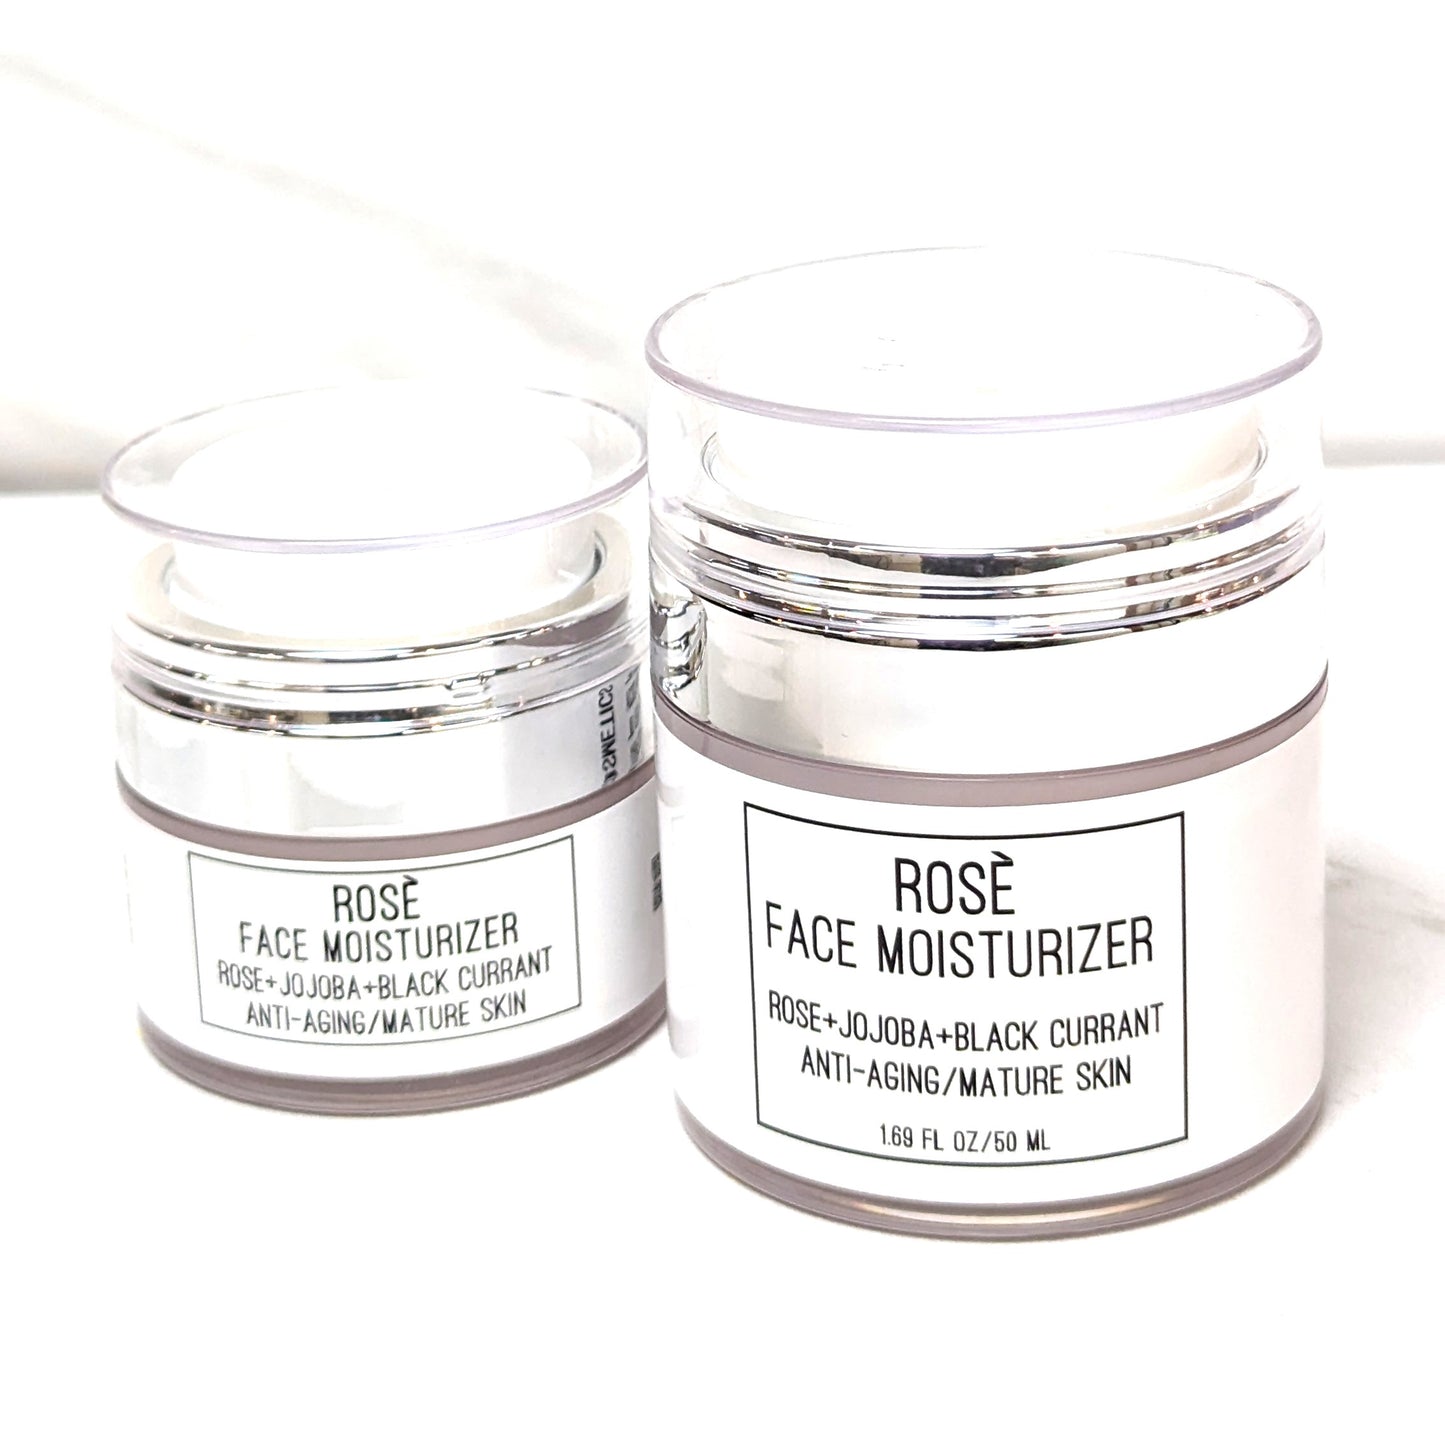 Rosè Face Moisturizer - Anti-Aging/Mature Skin